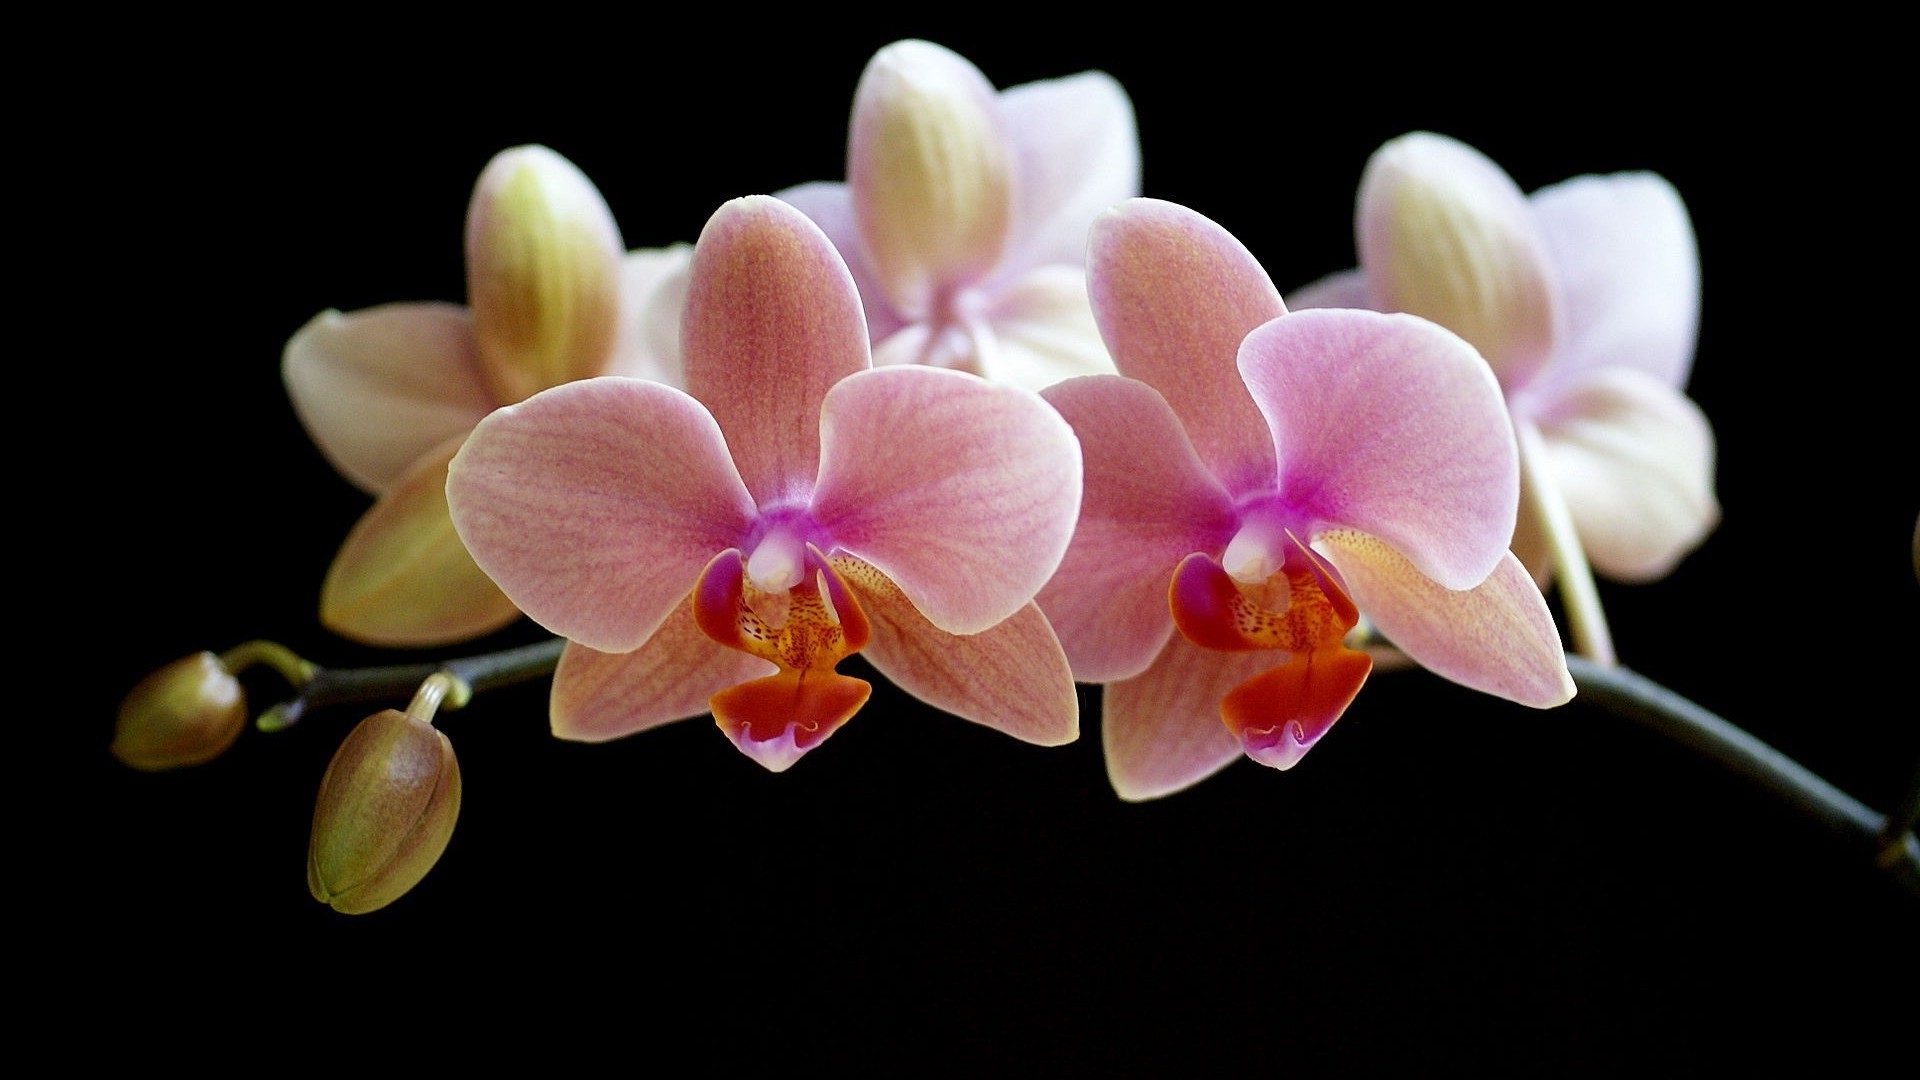 Shenzhen Nongke Orchid Desktop Images